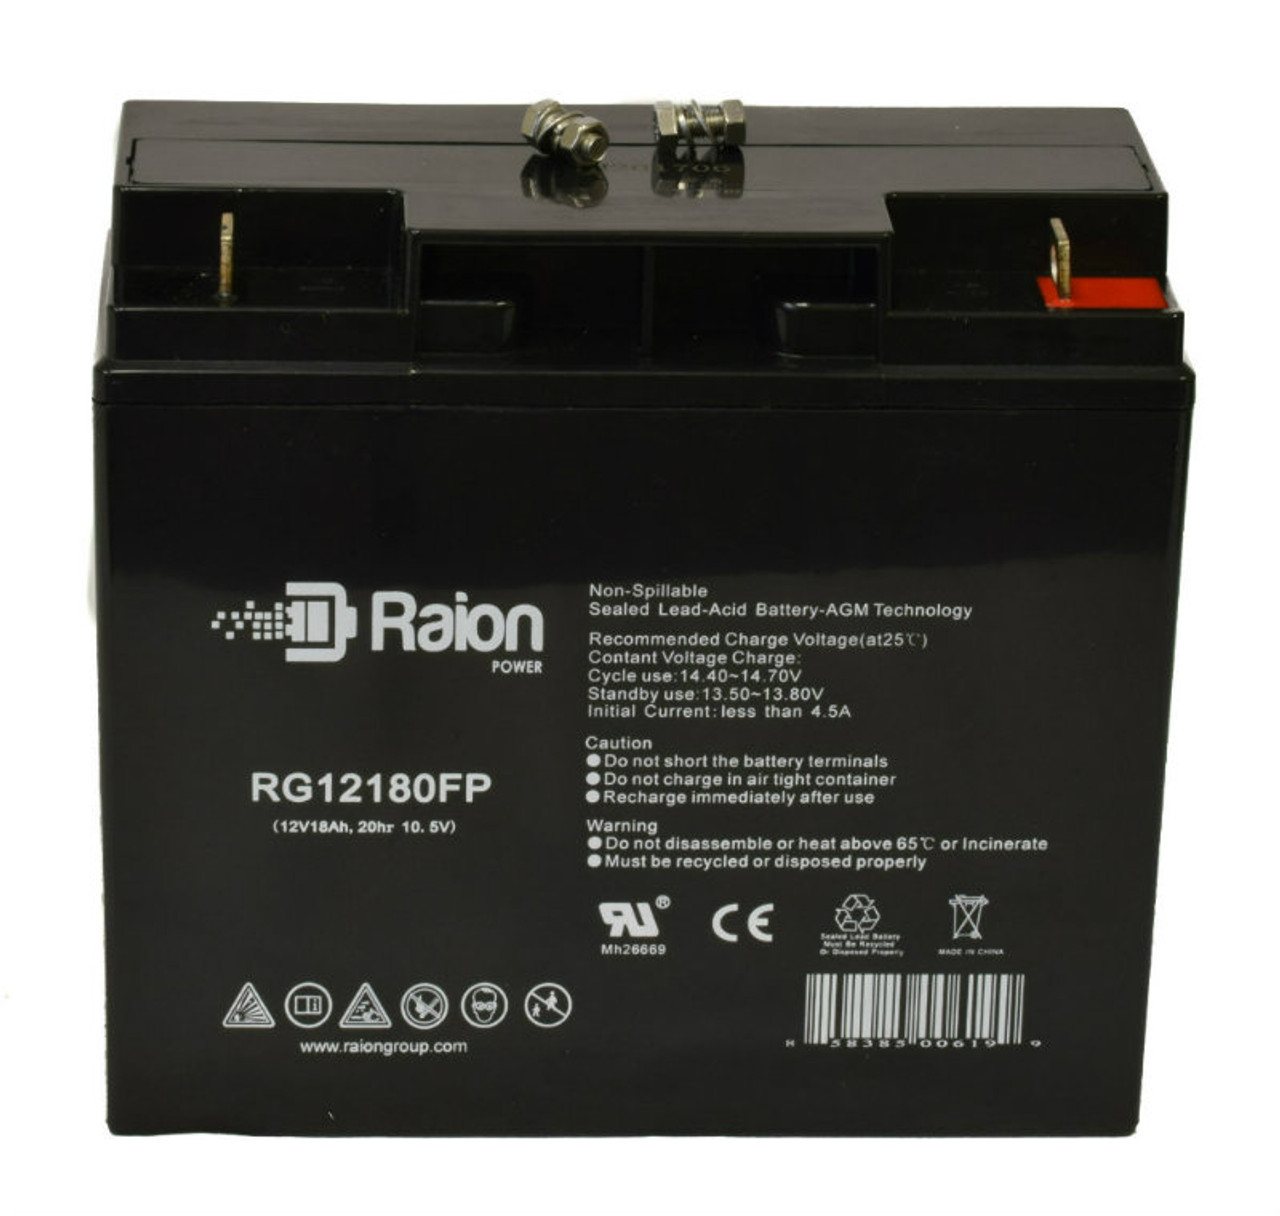 Raion Power RG12180FP 12V 18Ah Lead Acid Battery for CSB GP12170